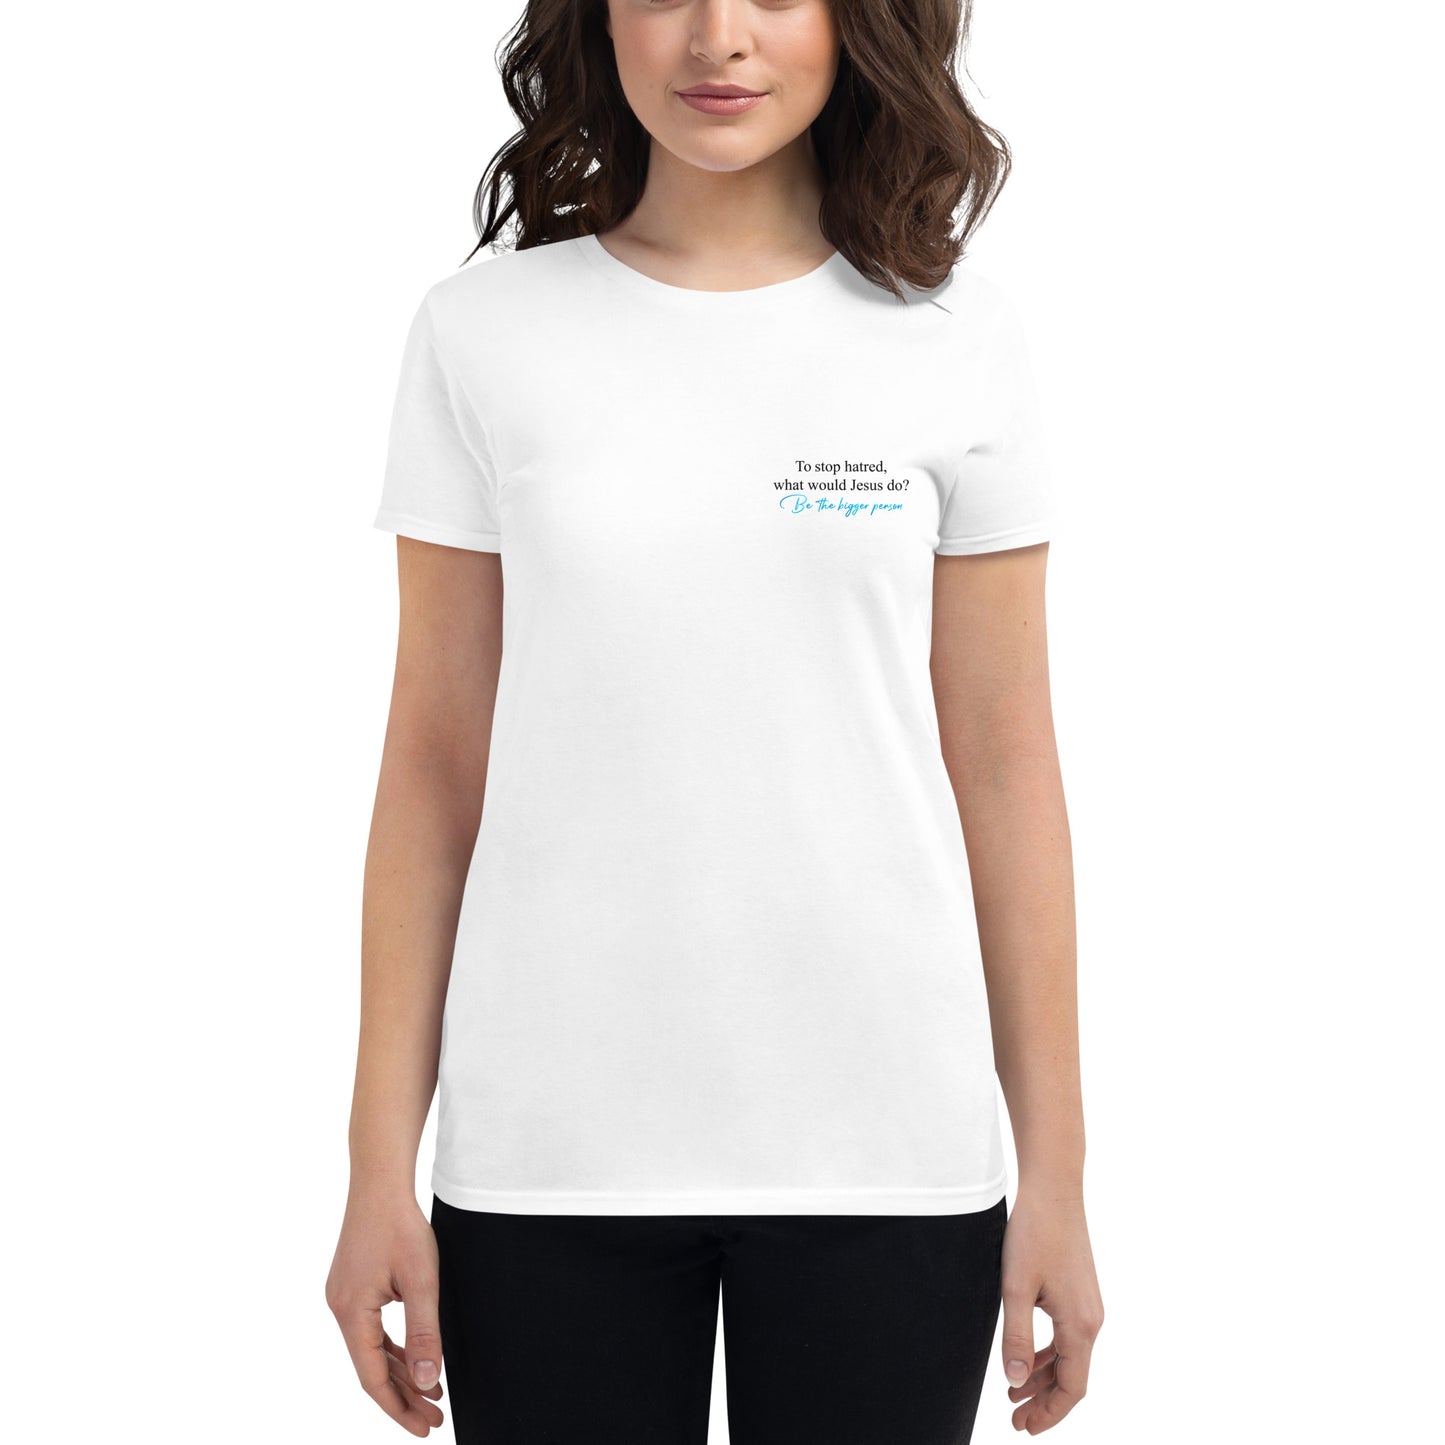 BTBP LOVE - Women's White T-shirt